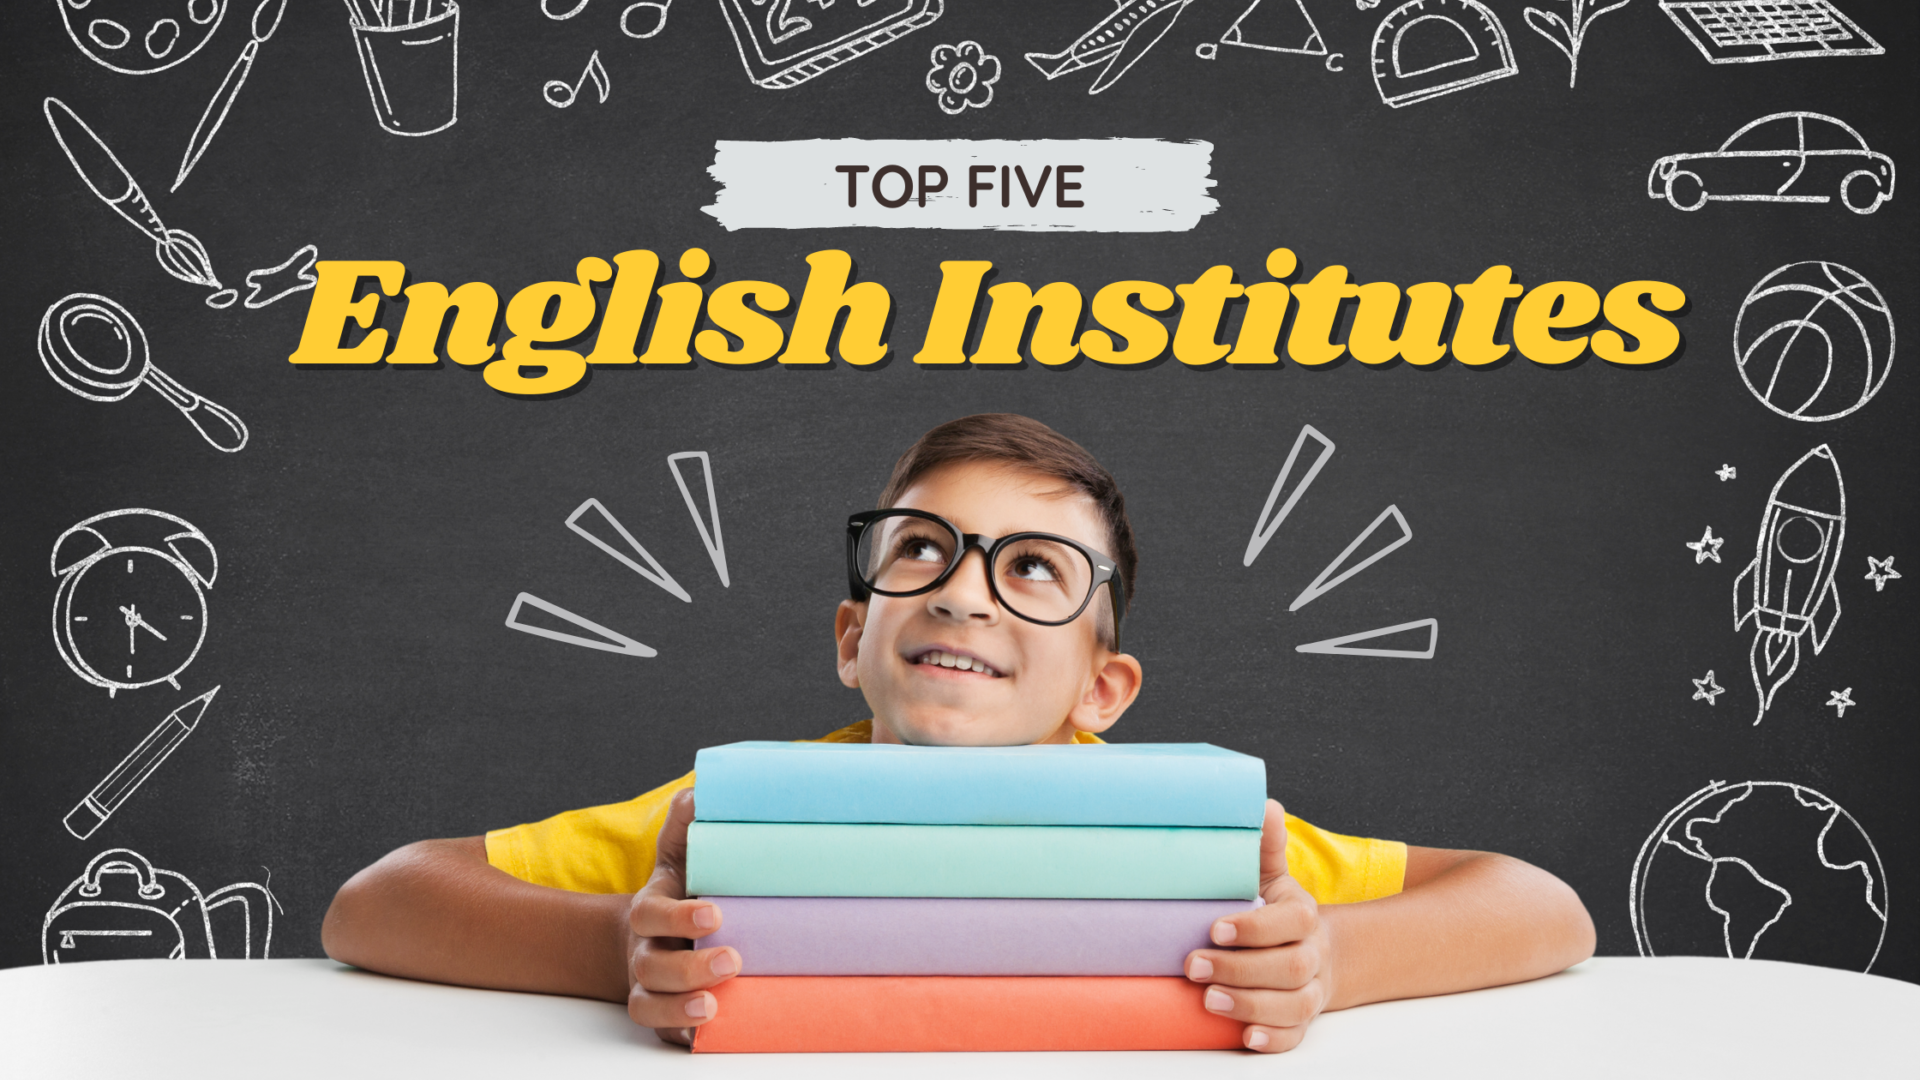 Top 5 English Institute in Mumbai